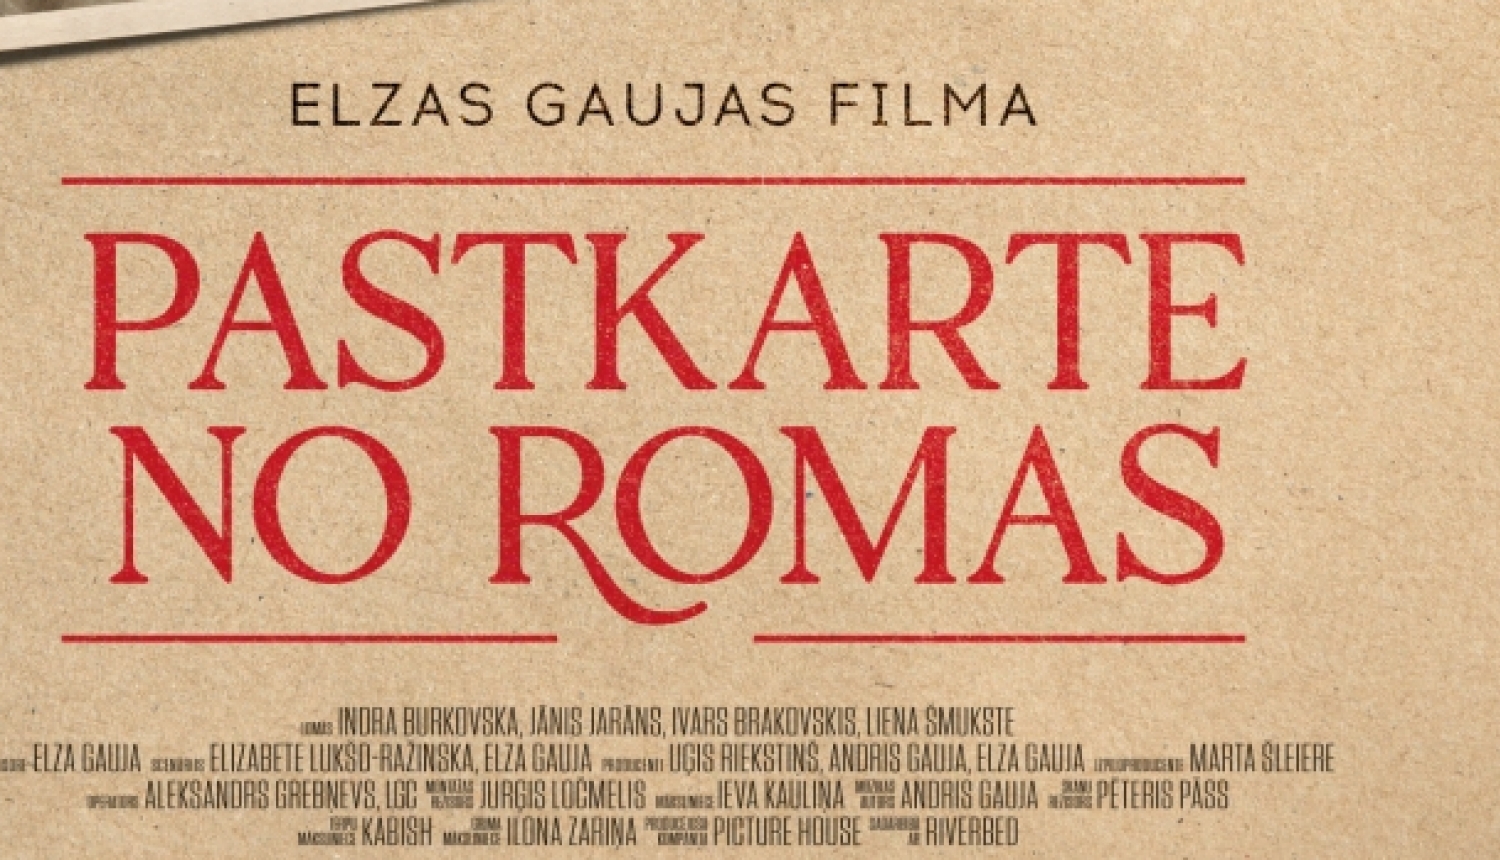 Plakāts kino Pastkarte no Romas Ķegumā 24.01.2024